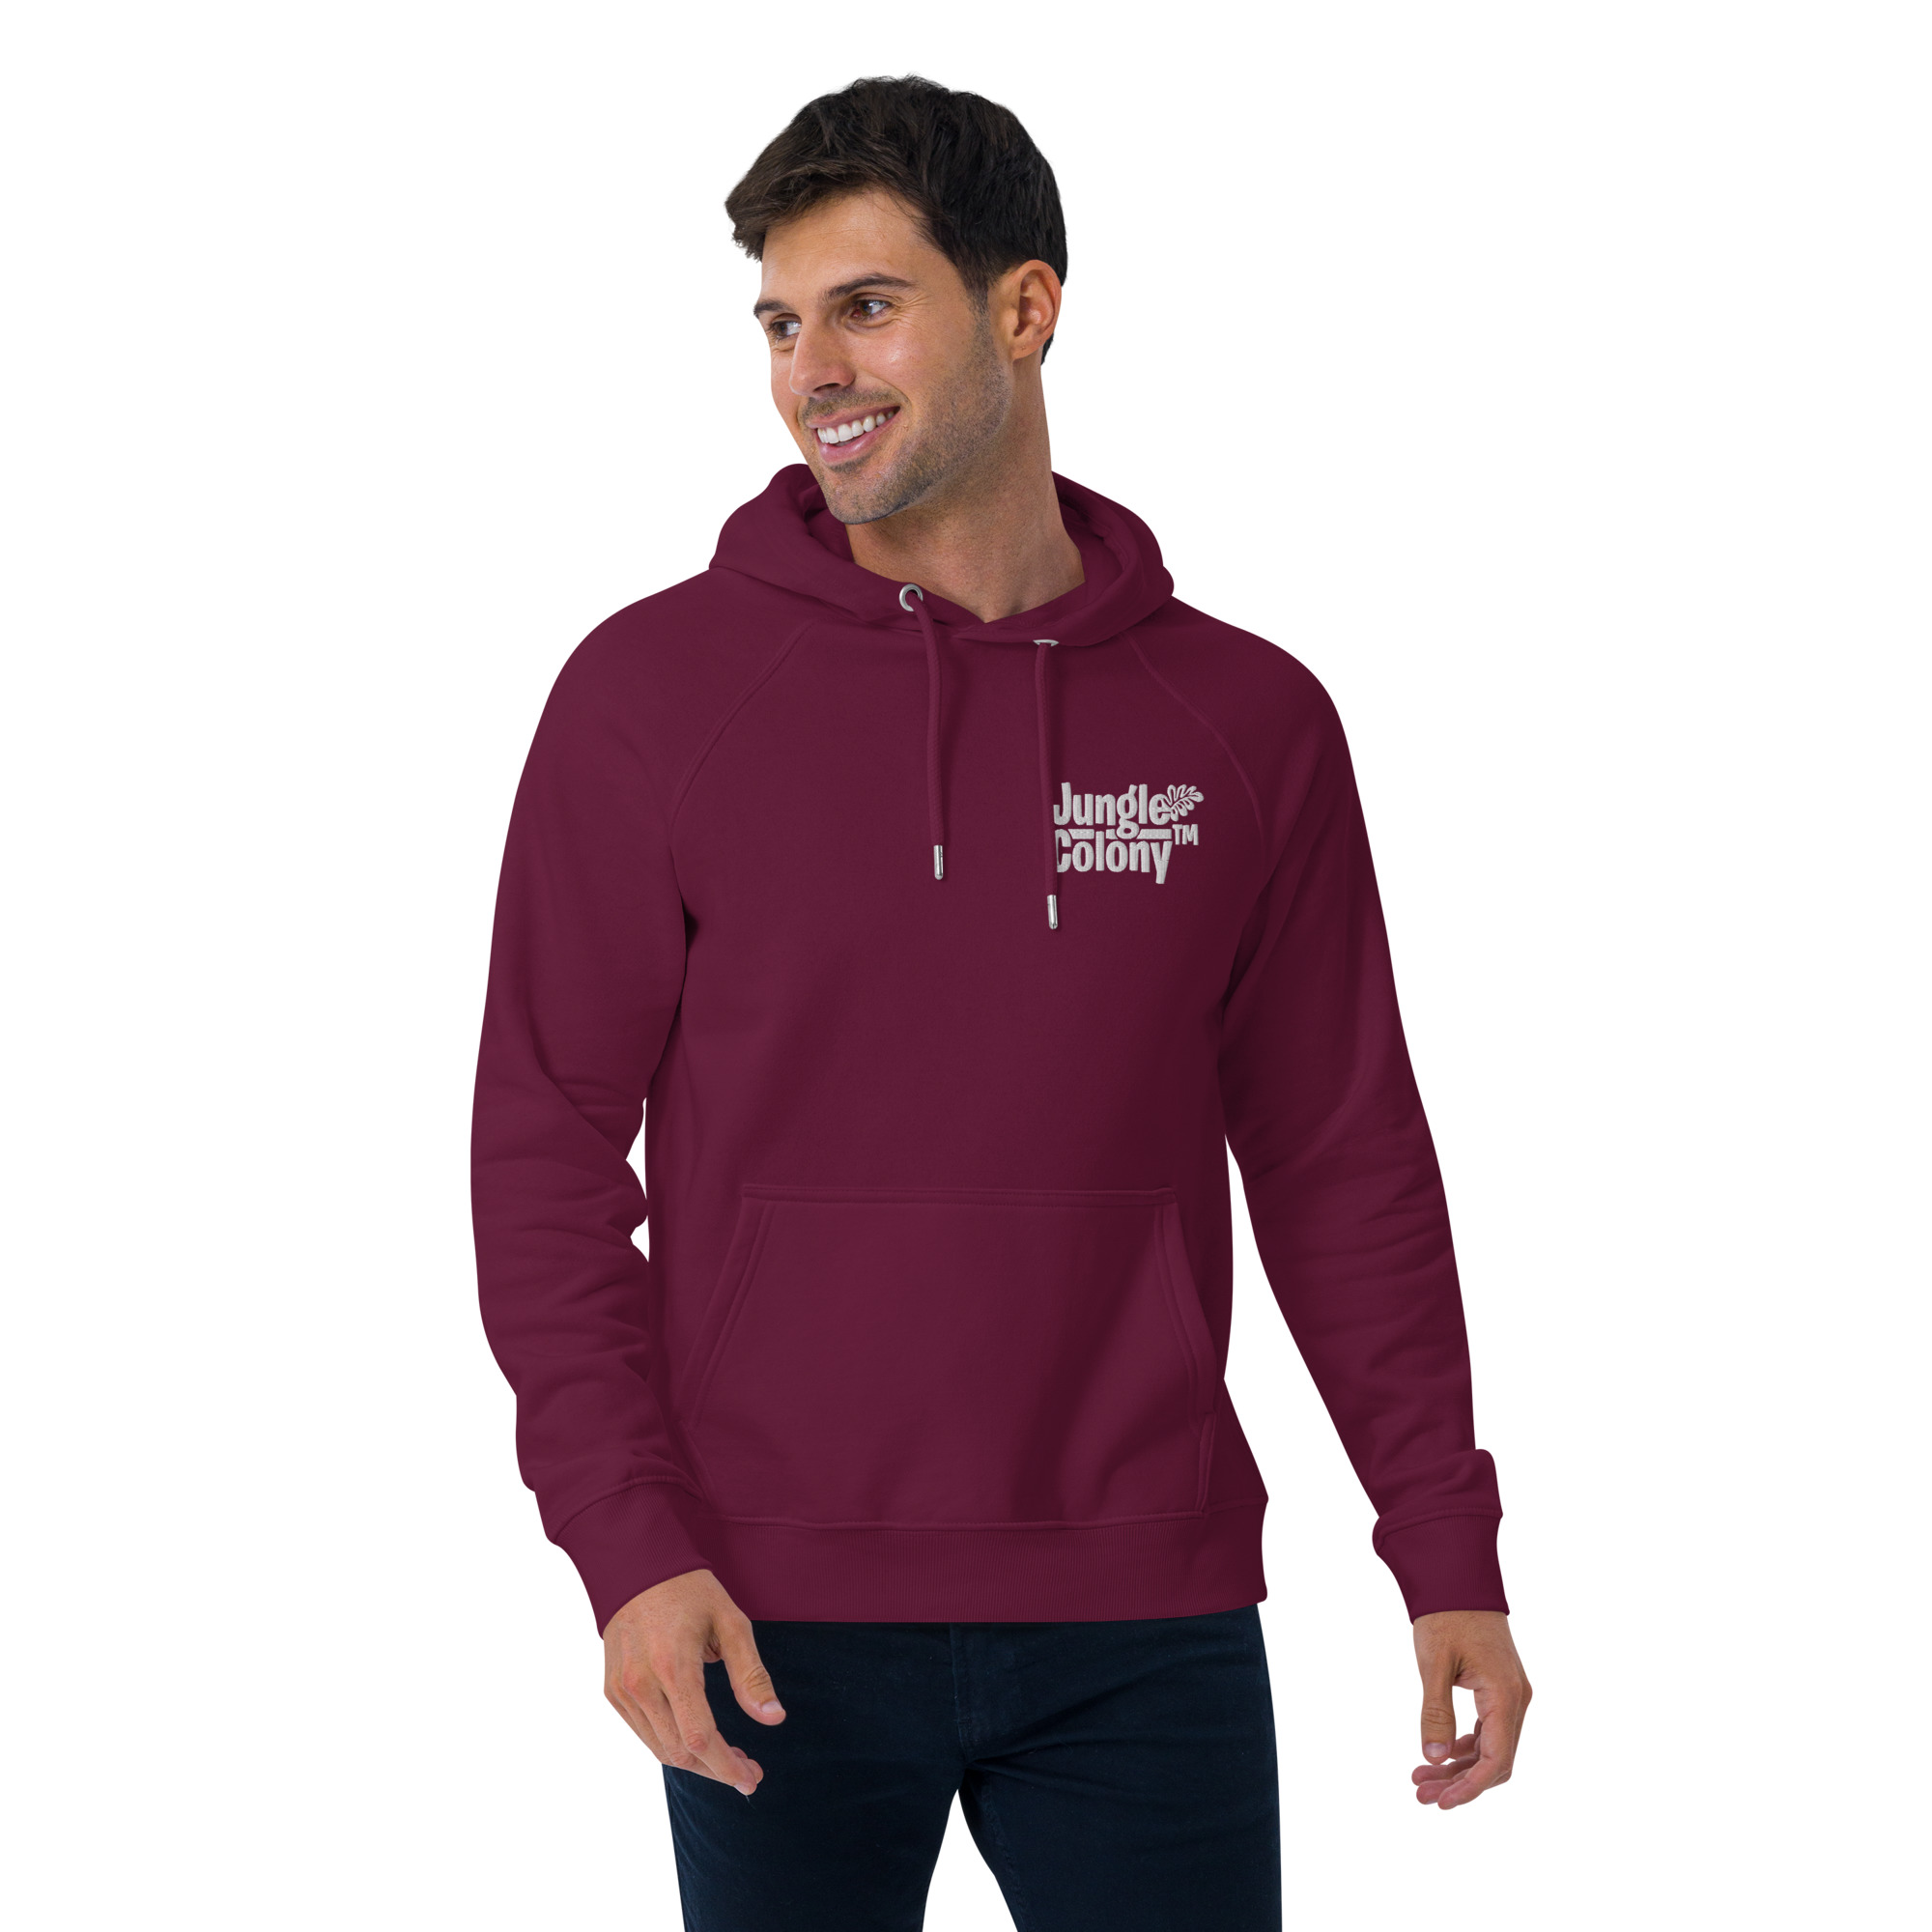 unisex-eco-raglan-hoodie-burgundy-front-2-6420086c86ba5.jpg